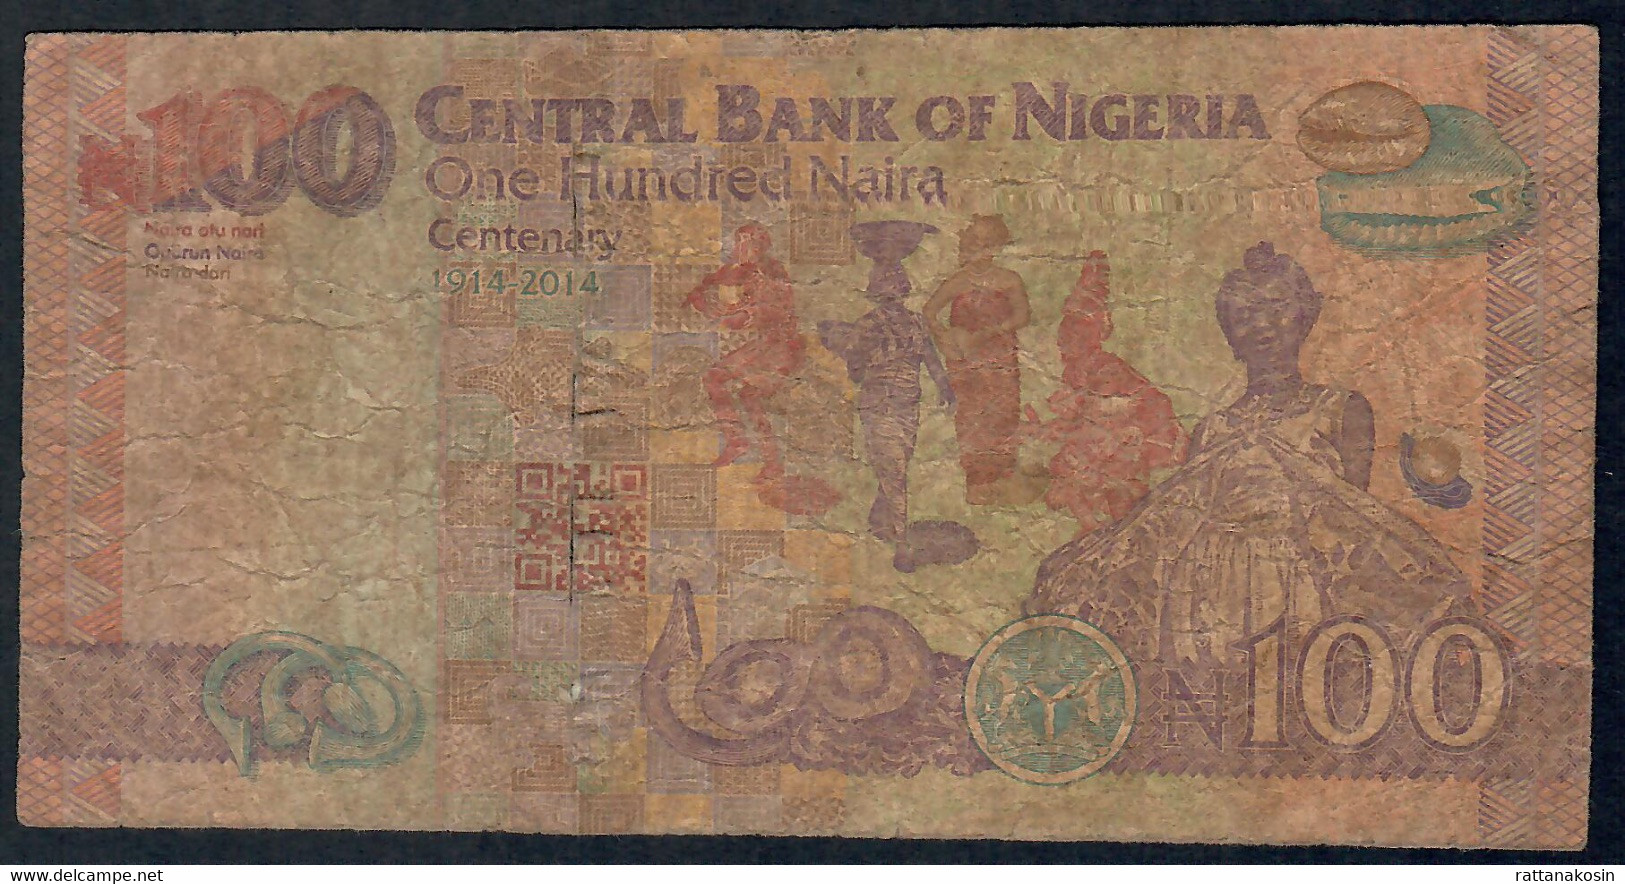 NIGERIA P41a   100 NAIRA  2014  # AU COMMEMORATIVE    FINE FOLDS - Nigeria